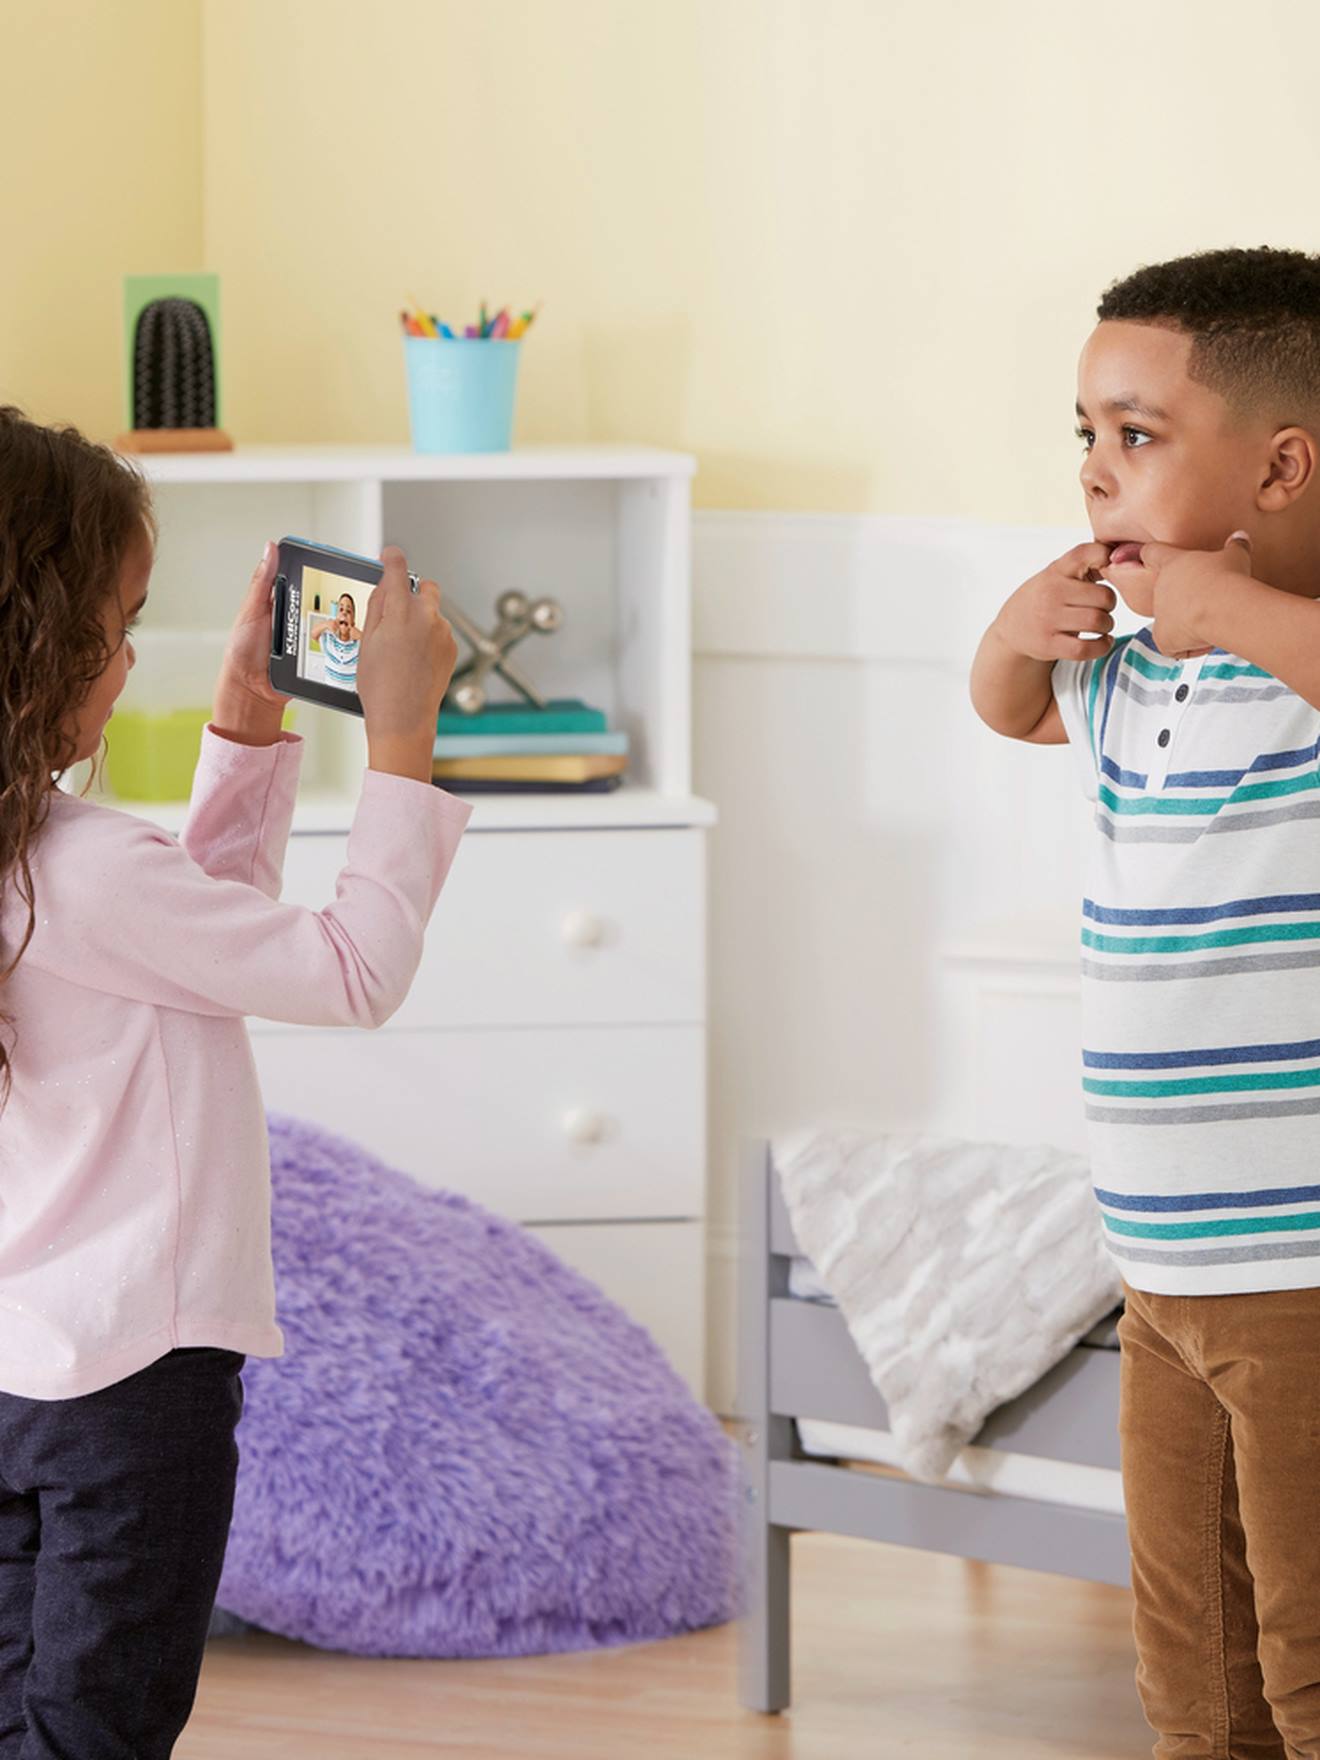 Kidicom Advance 3.0 - Smartphone pour enfants sans abonnement dès 6 ans